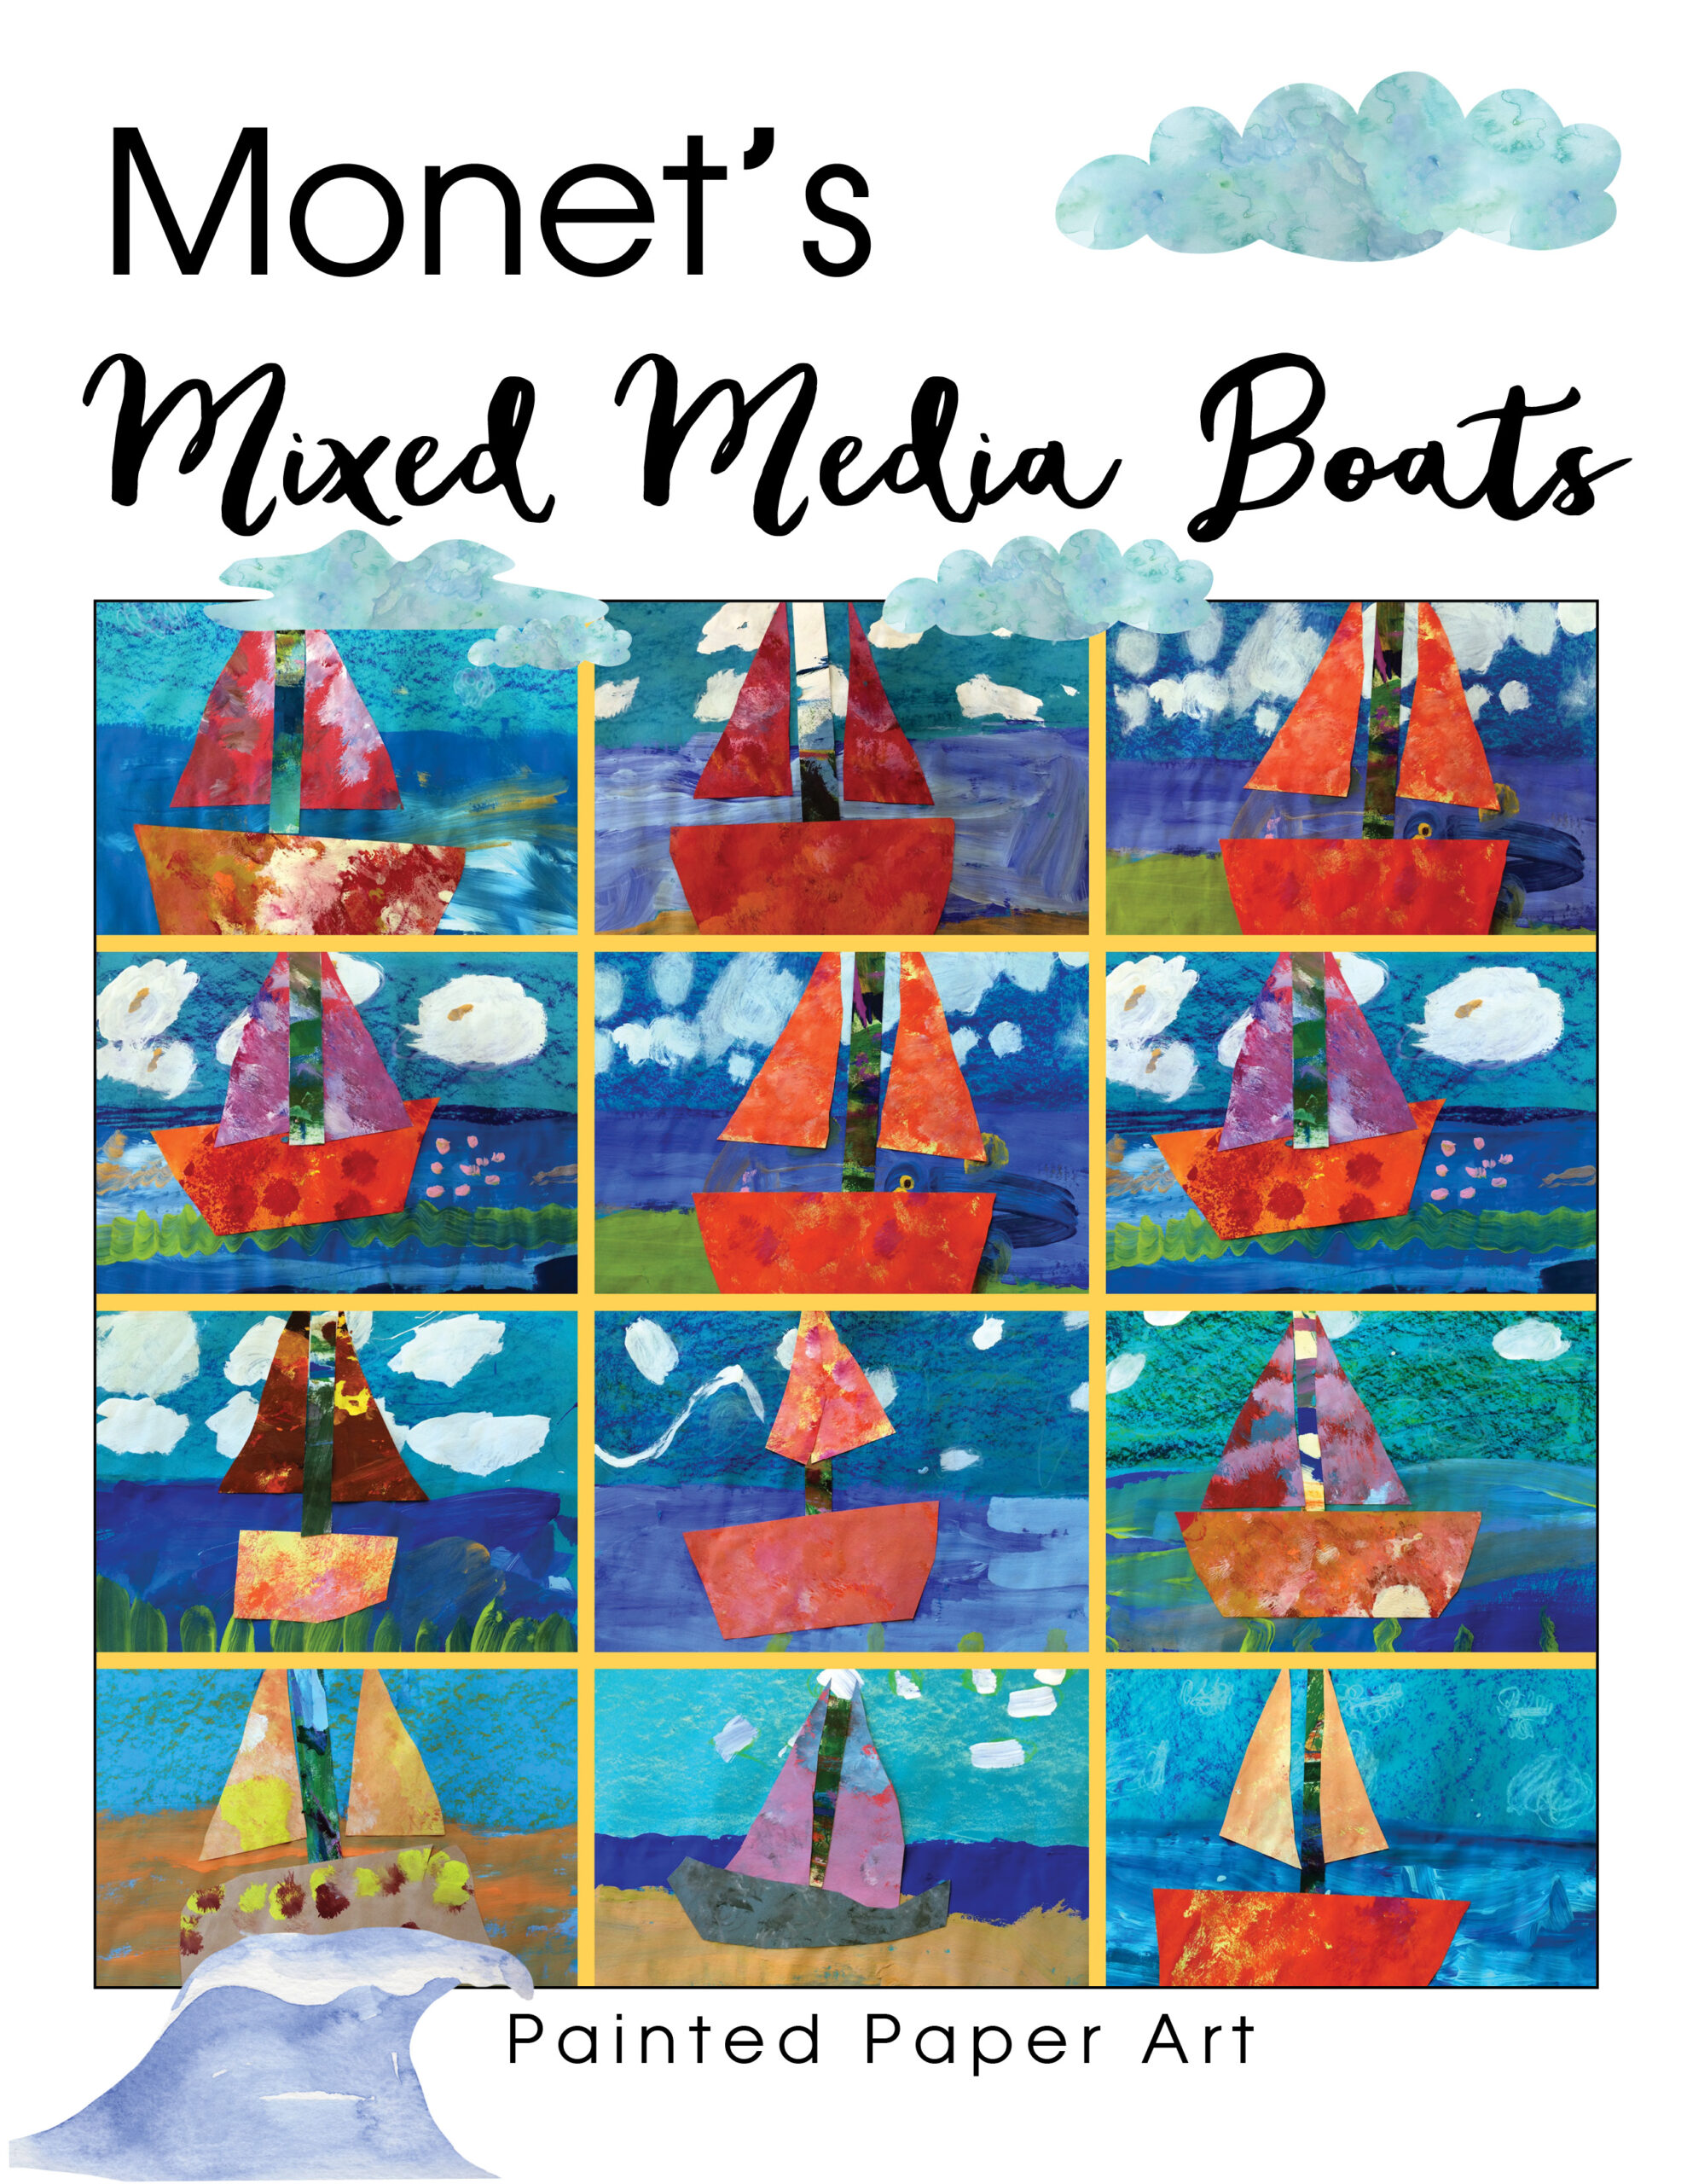 Monet’s Mixed Media Boats | LaptrinhX / News